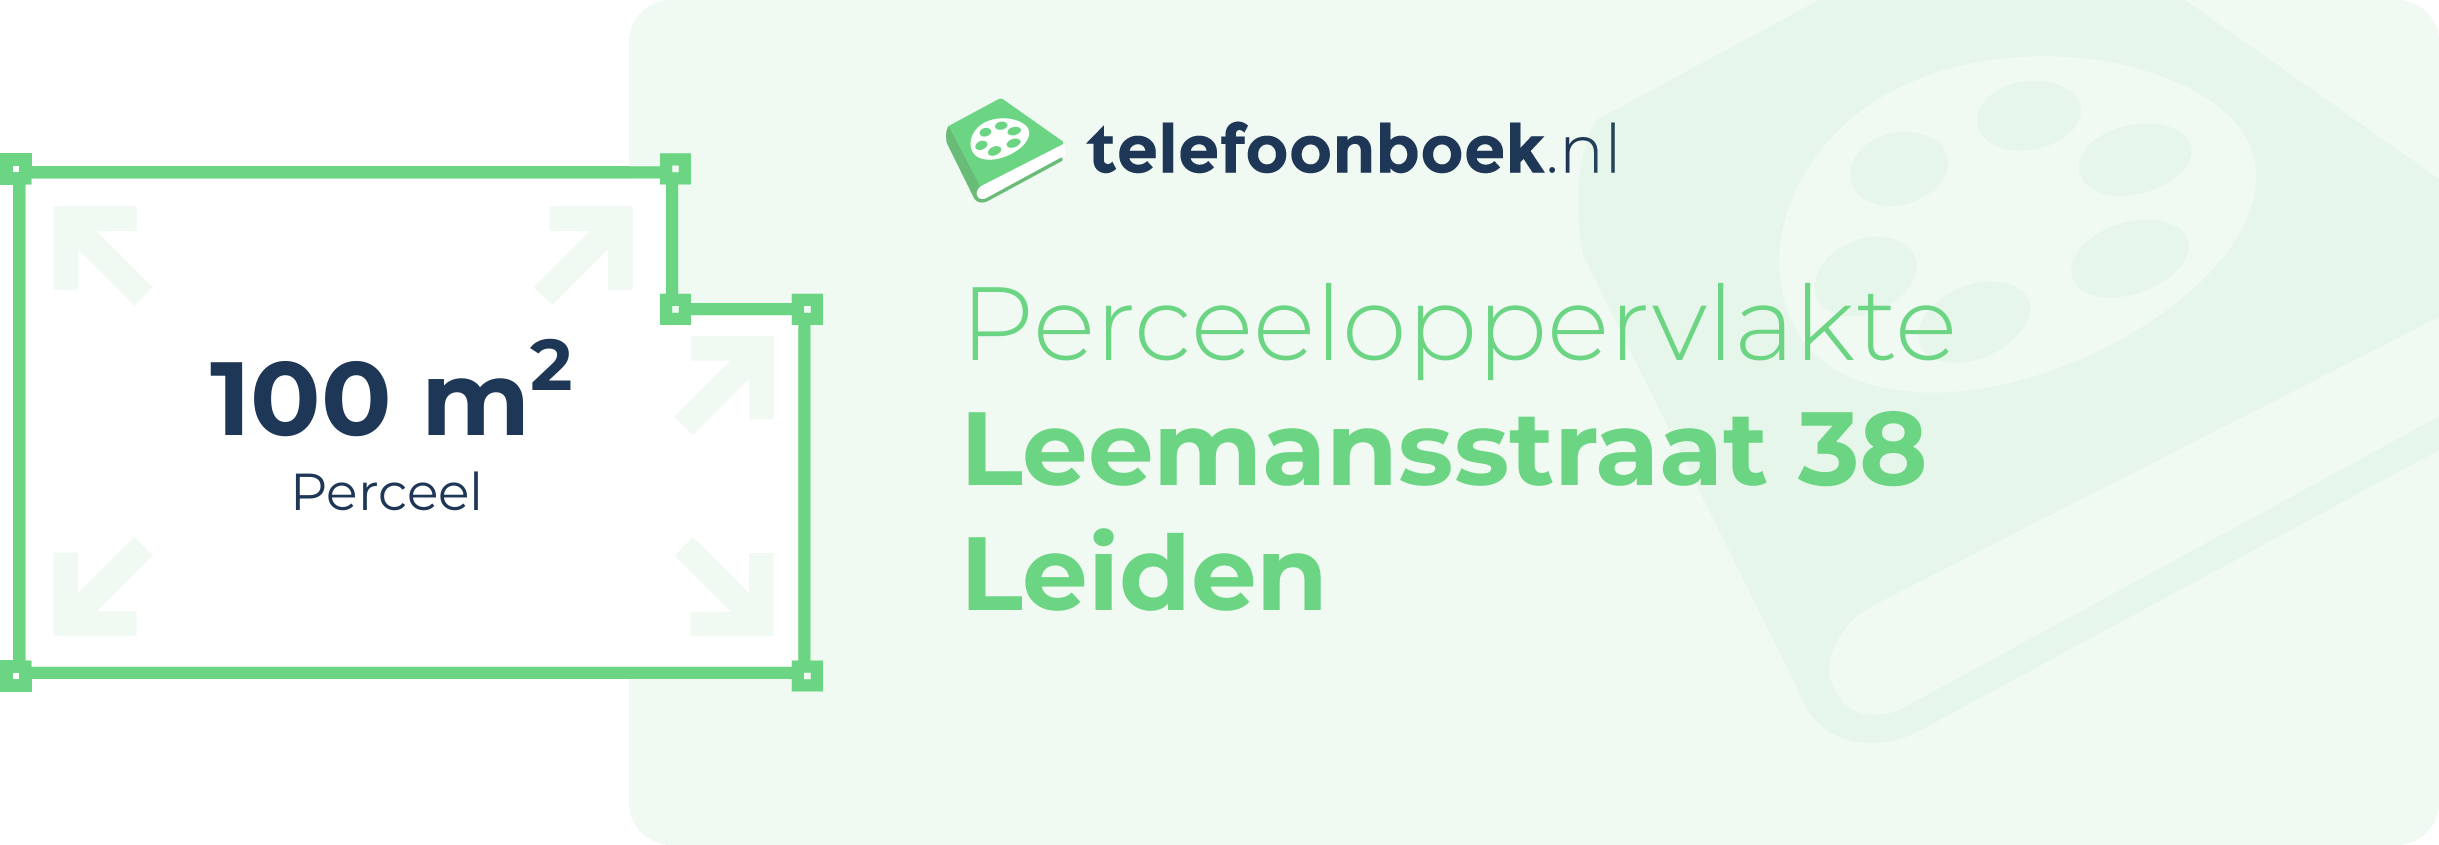 Perceeloppervlakte Leemansstraat 38 Leiden